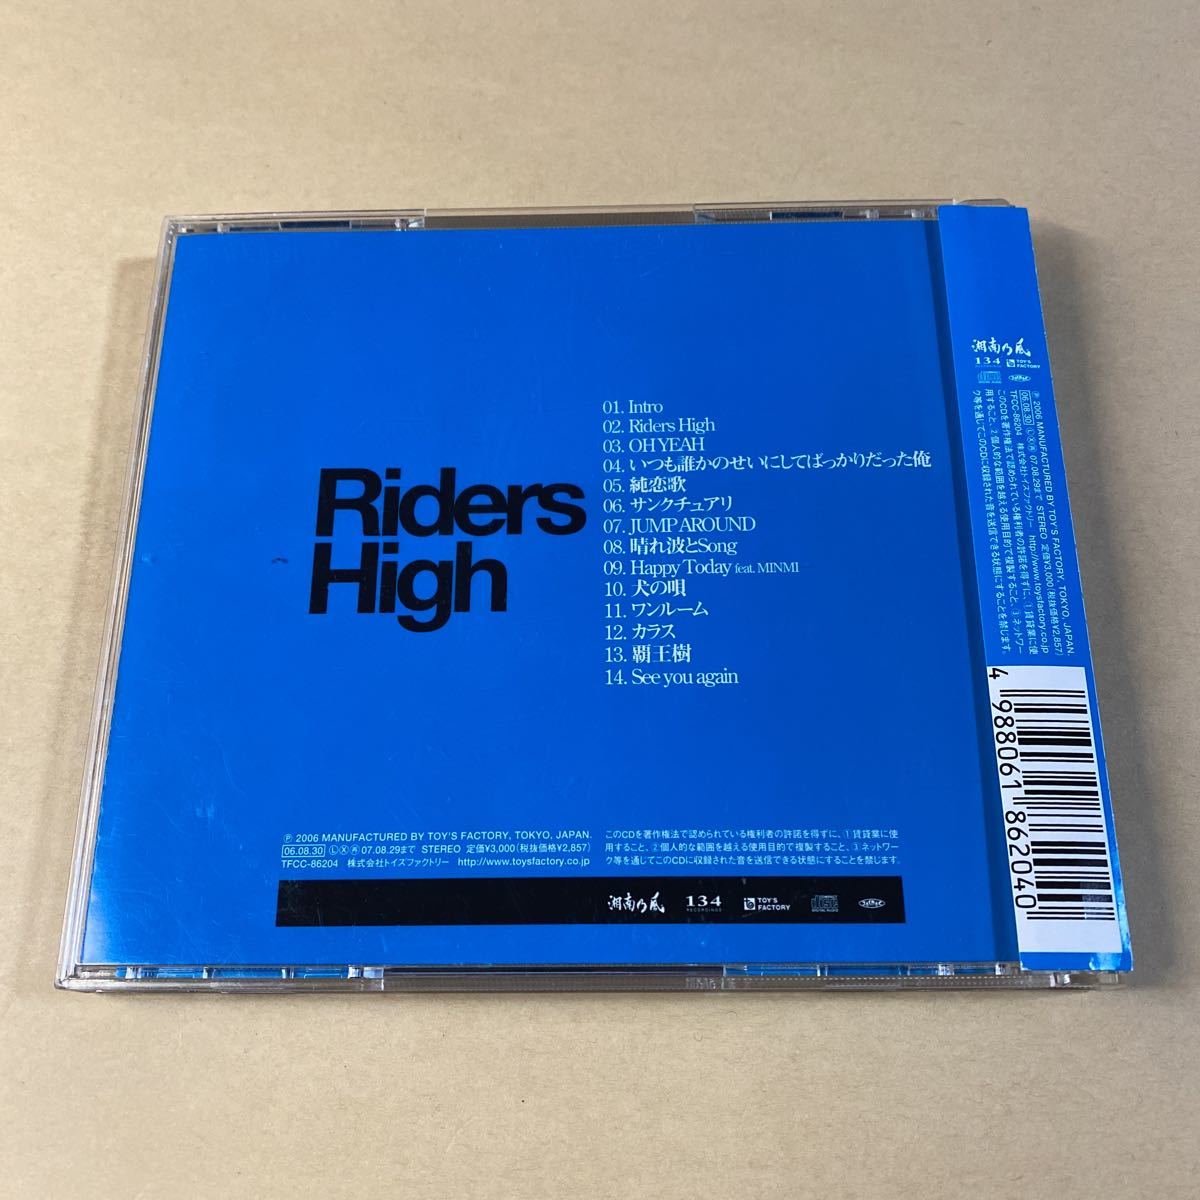 湘南乃風 1CD「Riders High」_画像2